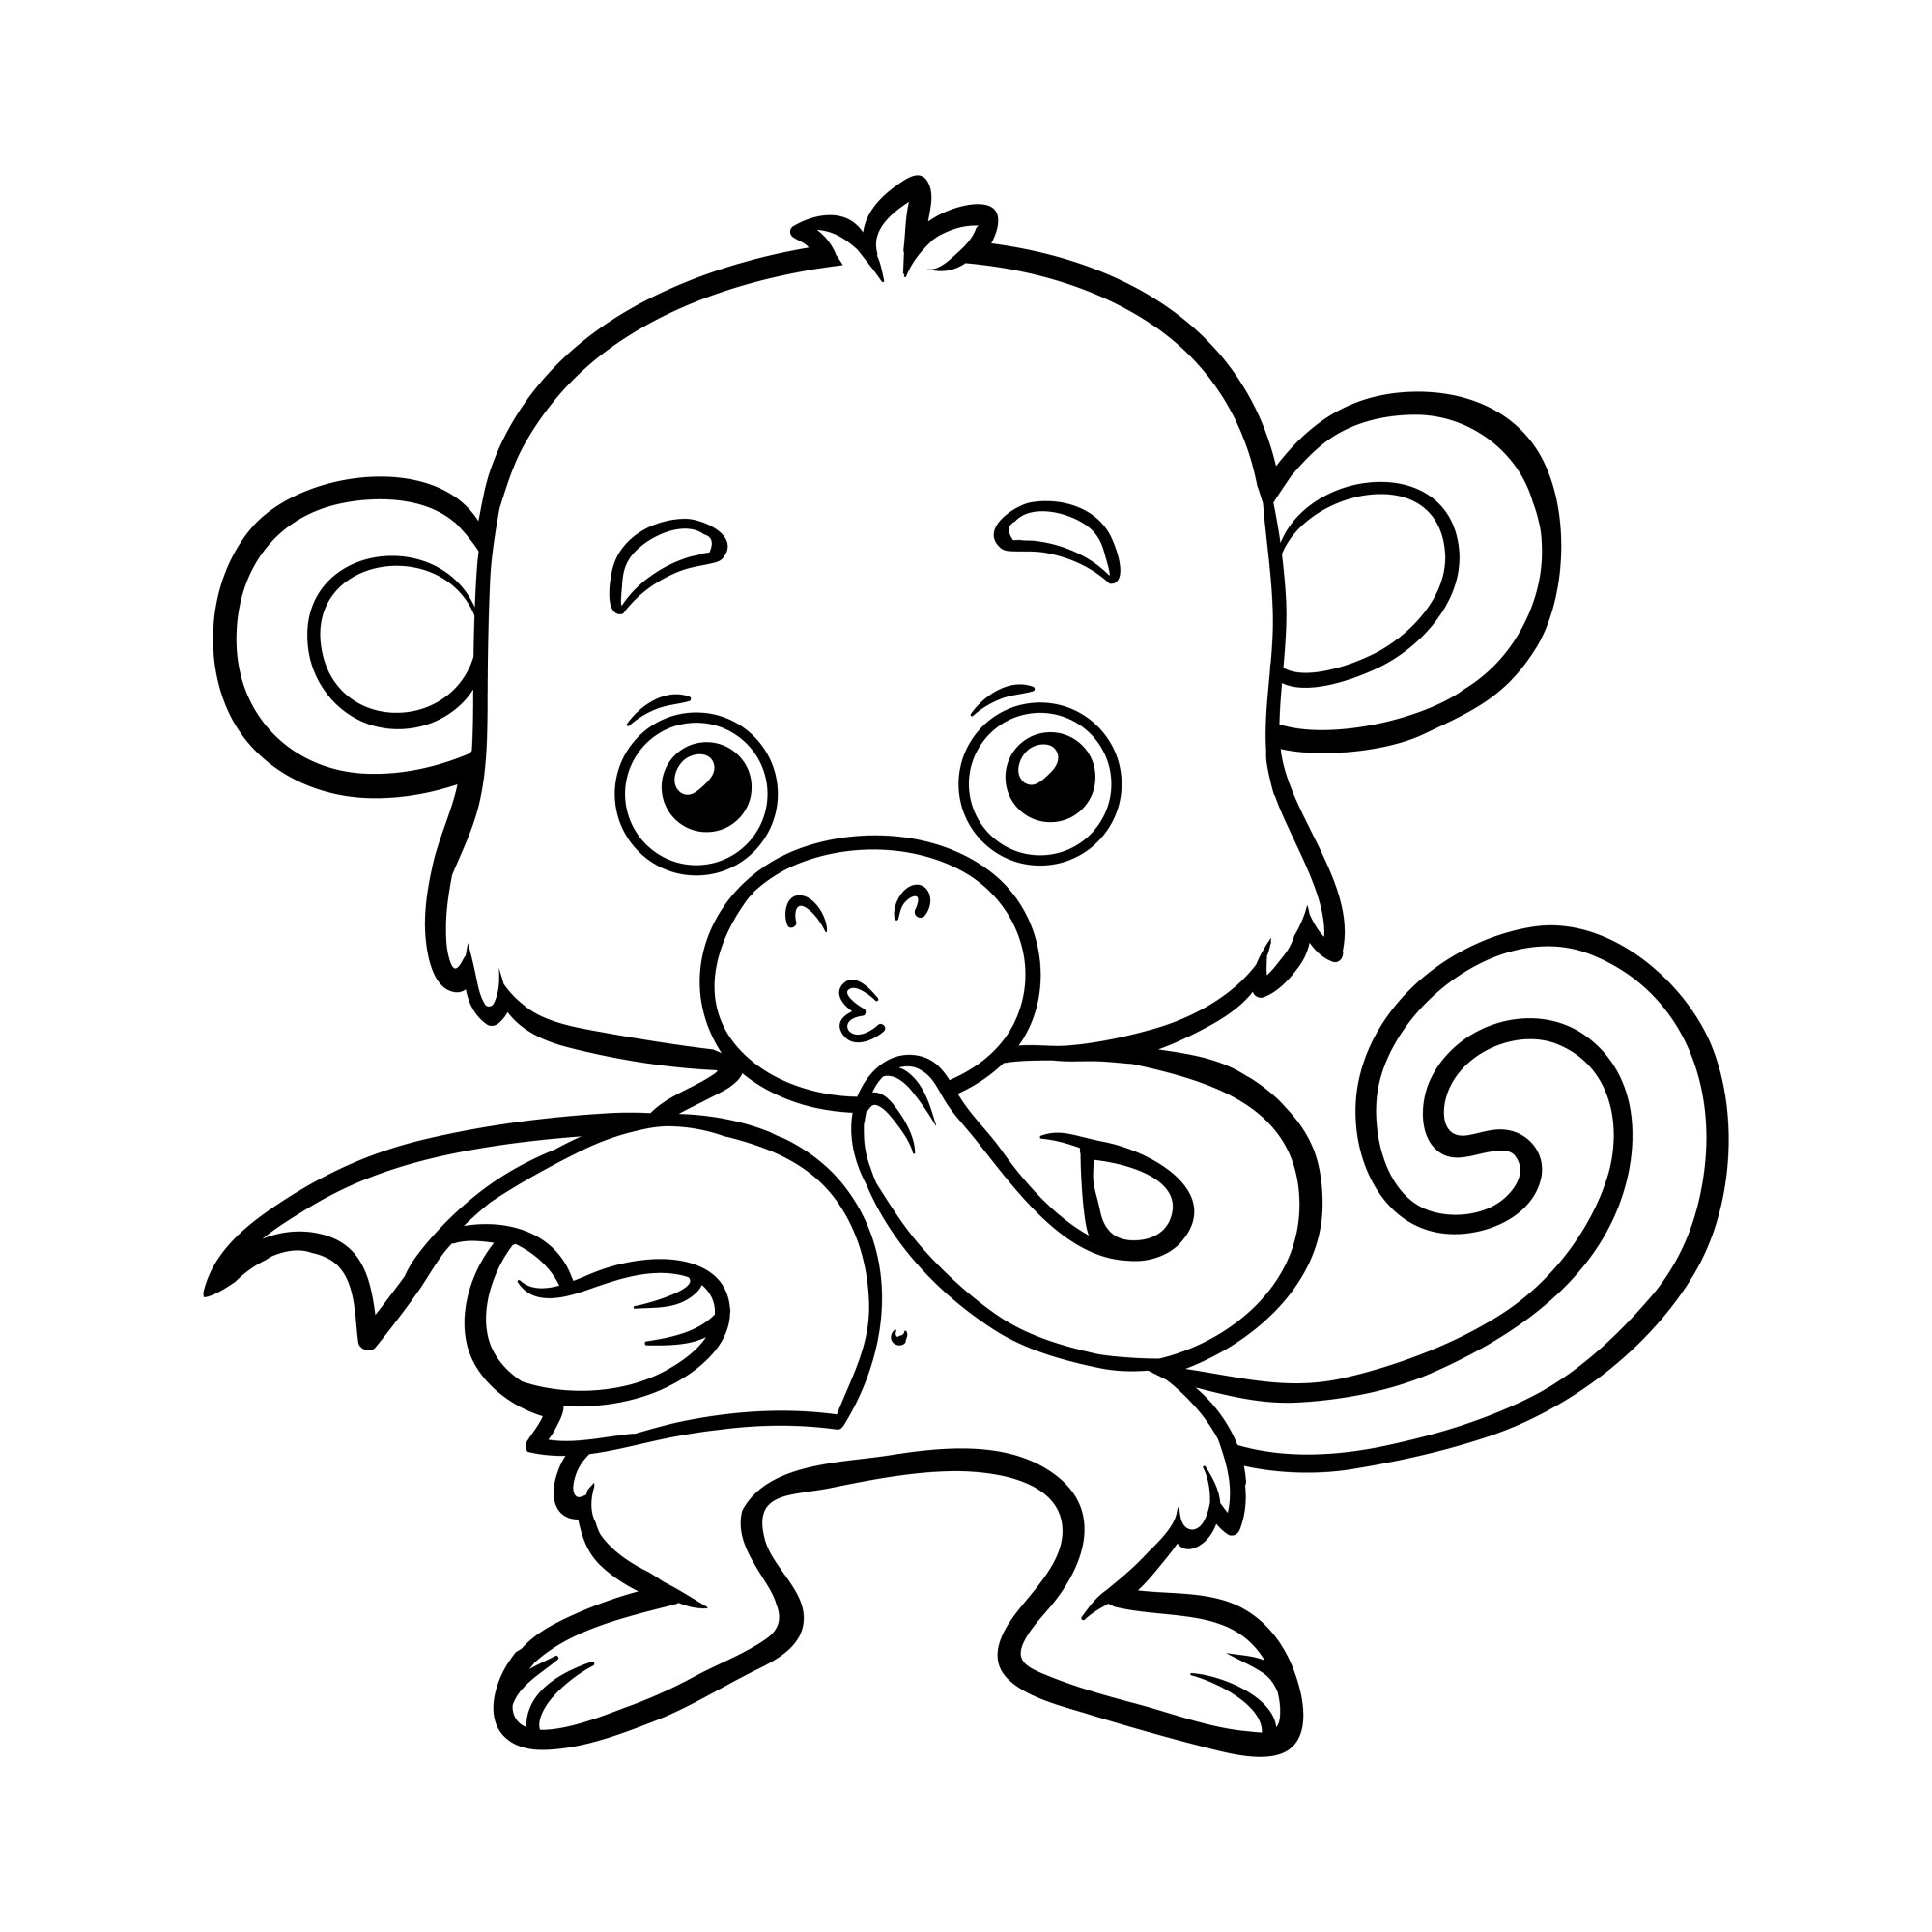 Раскраска для детей: задумчивая обезьяна c листом бумаги в руке